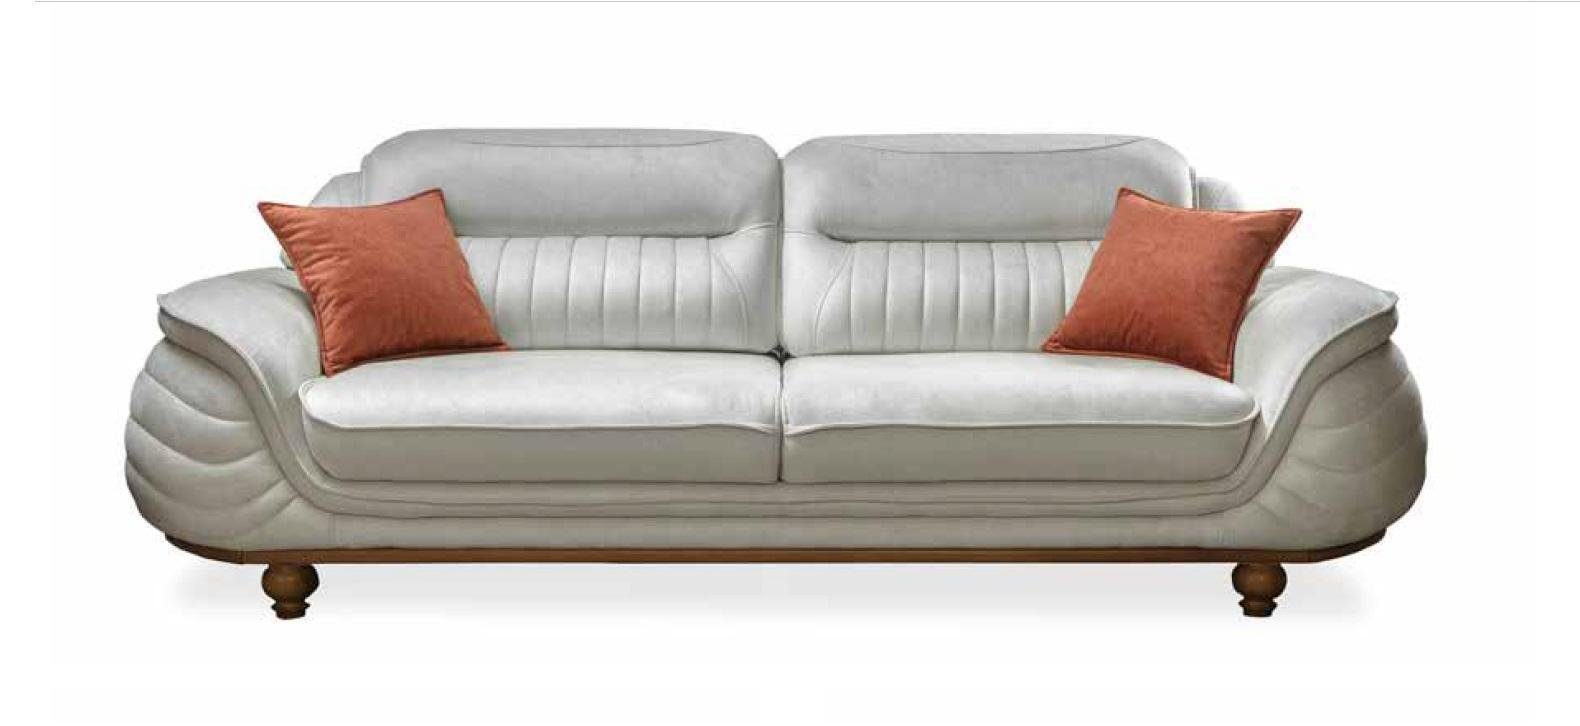 JVmoebel Sofa Sofas Zimmer Möbel Neu Design Dreisitzer Couch Polster Sofa 3 Sitz, Made in Europe